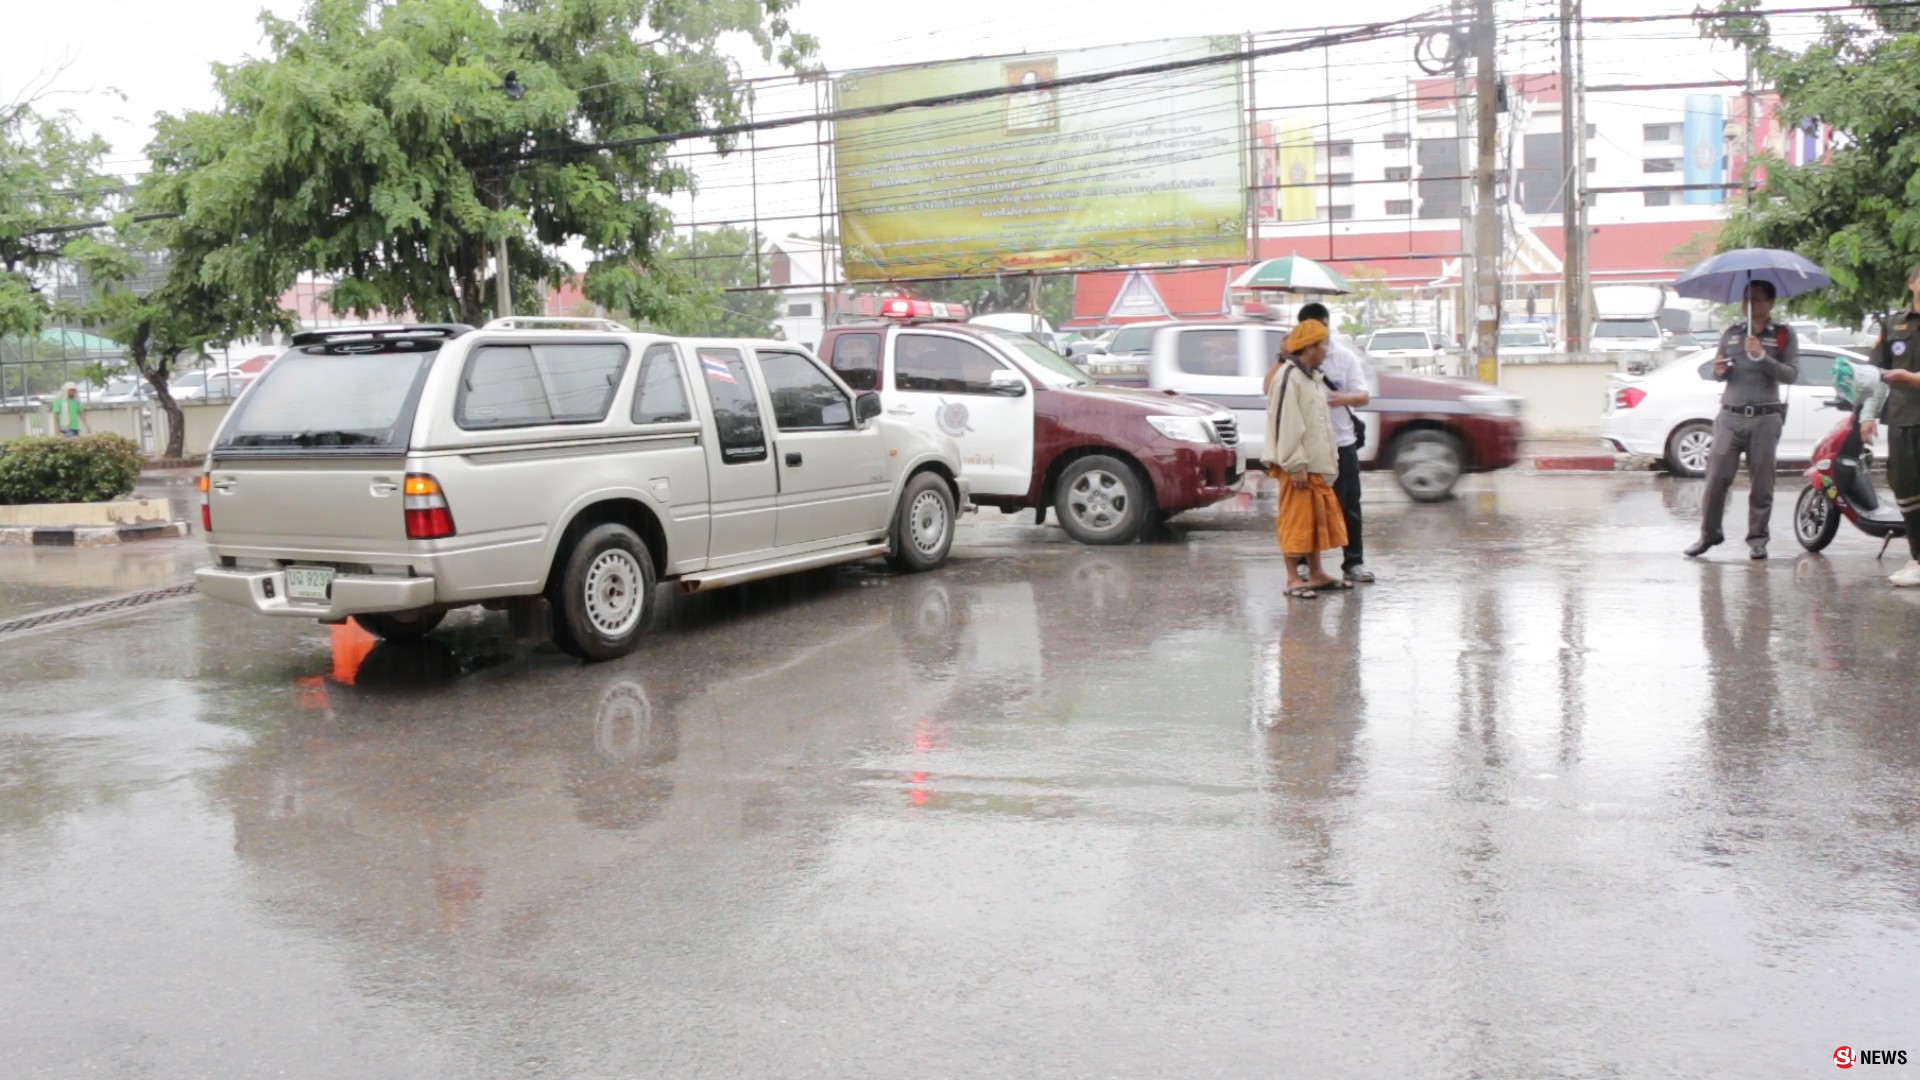 คุณพระช่วย! มอไซค์ซิ่งผ่าฝนลื่นถนนมุดใต้ท้องรถยนต์หวิดดับกลางเมืองกาฬสินธุ์